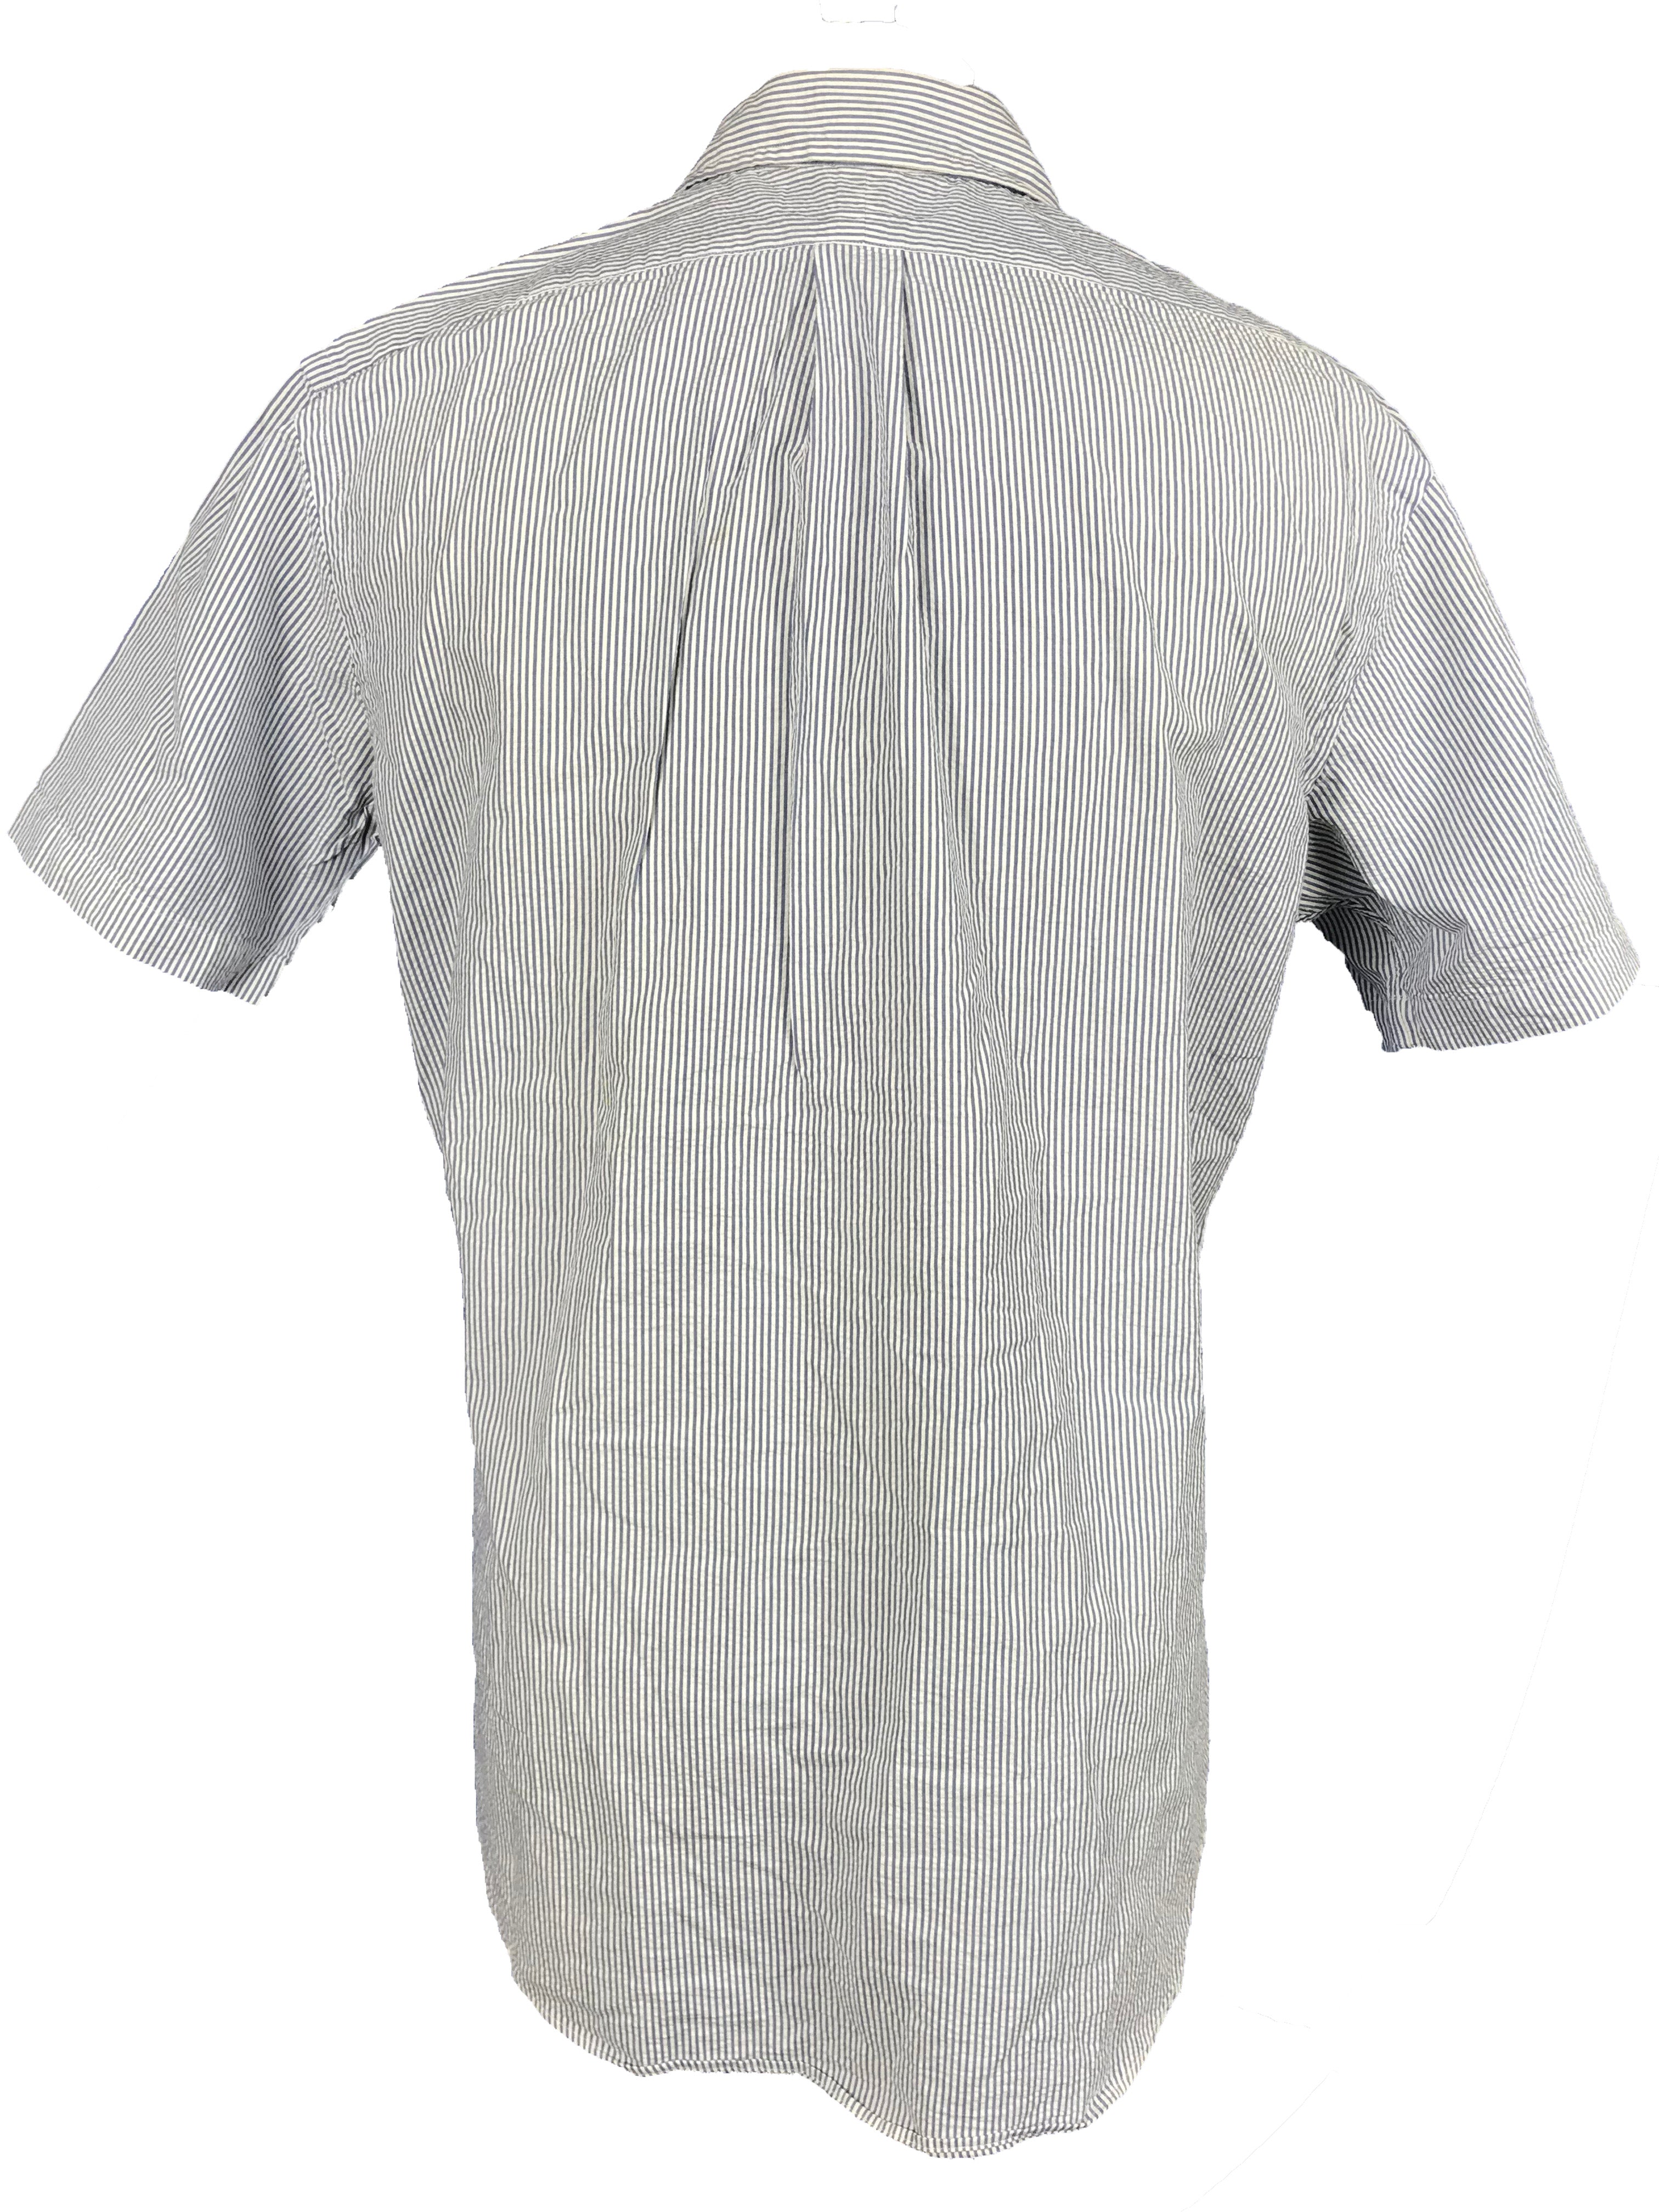 Ralph Lauren Blue & White Button-Down Shirt Men's Size Large